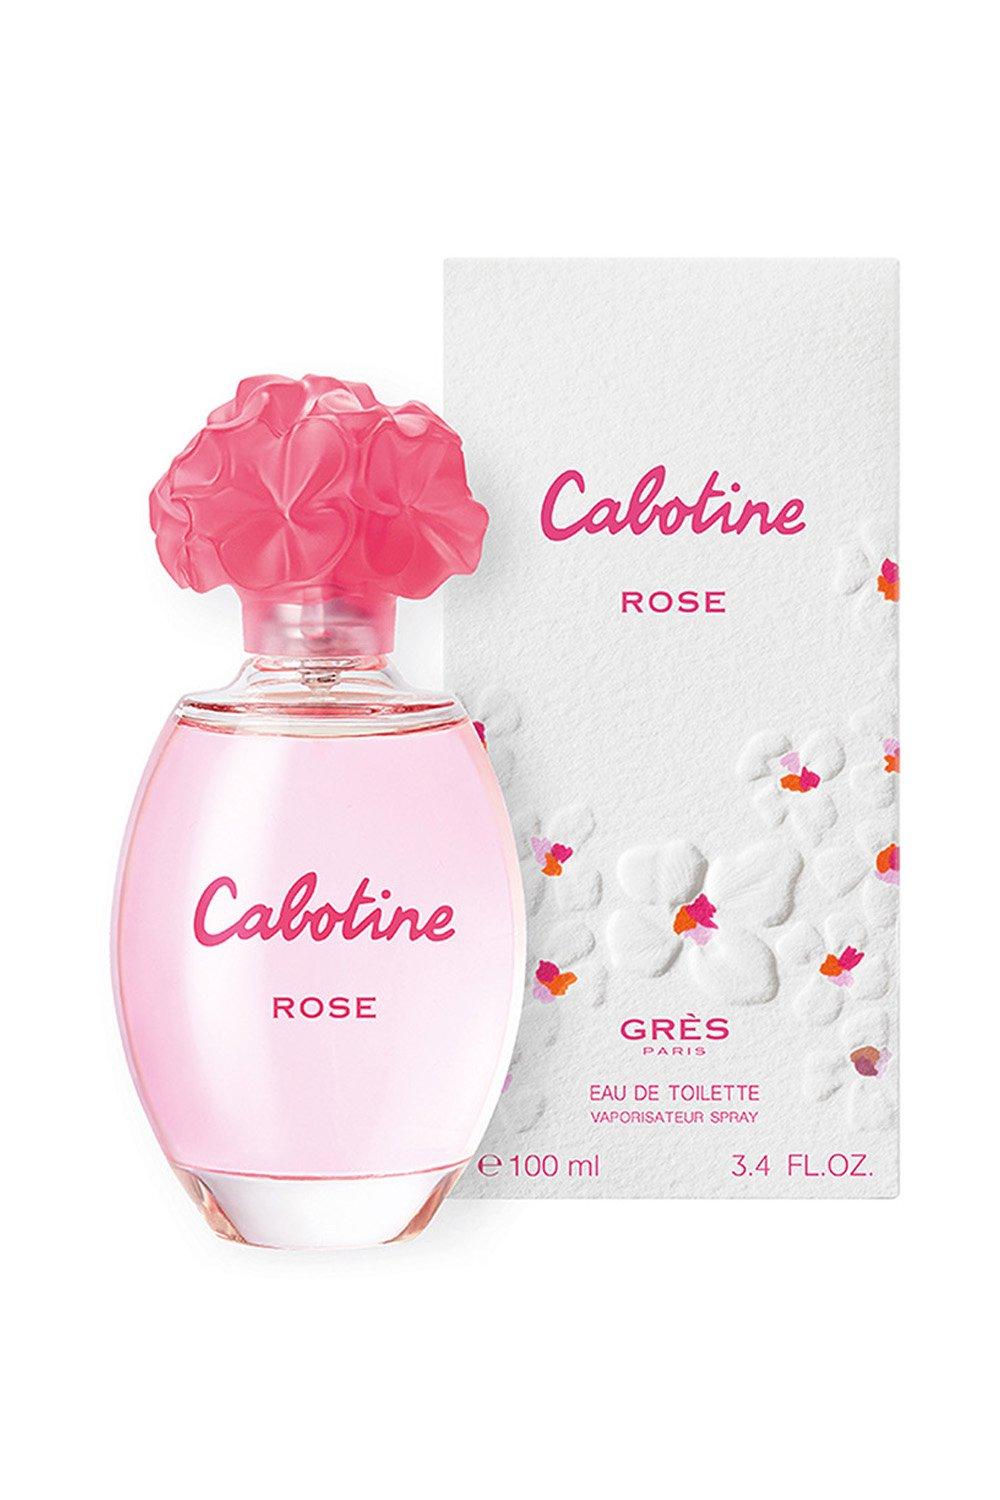 Parfum Gres Cabotine Rose Eau De Toilette 100ml